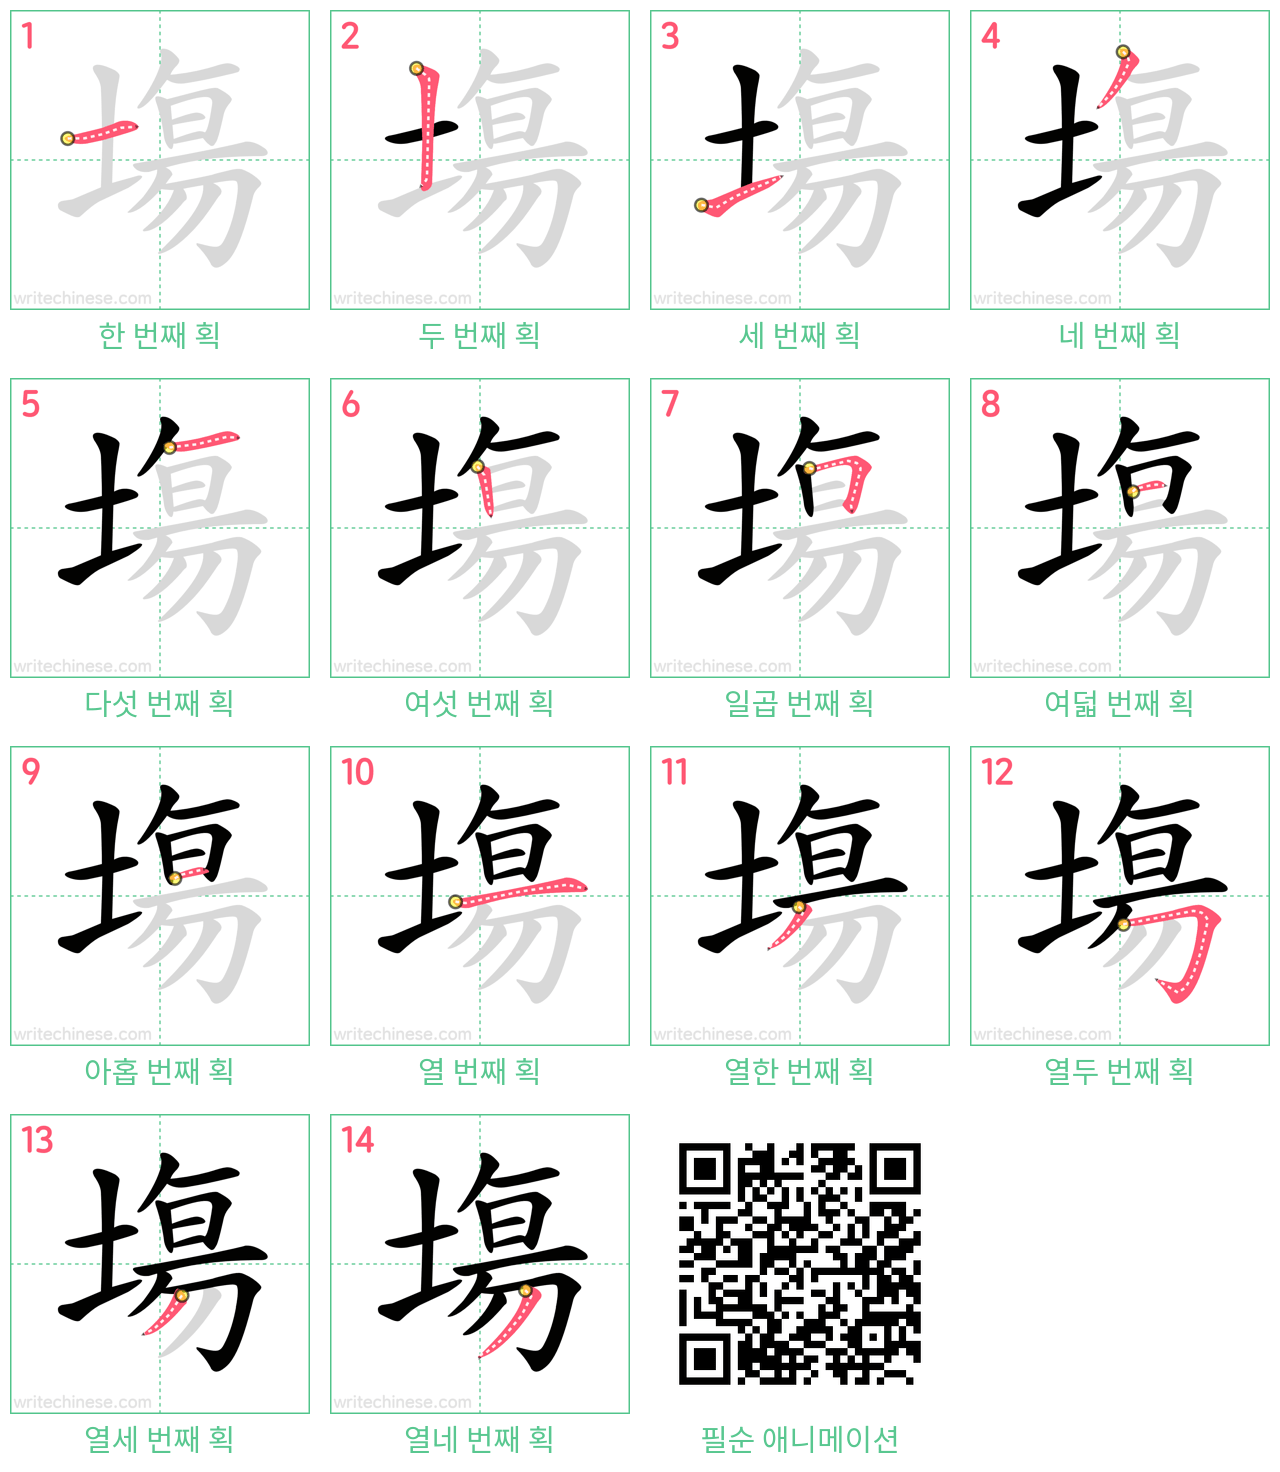 塲 step-by-step stroke order diagrams